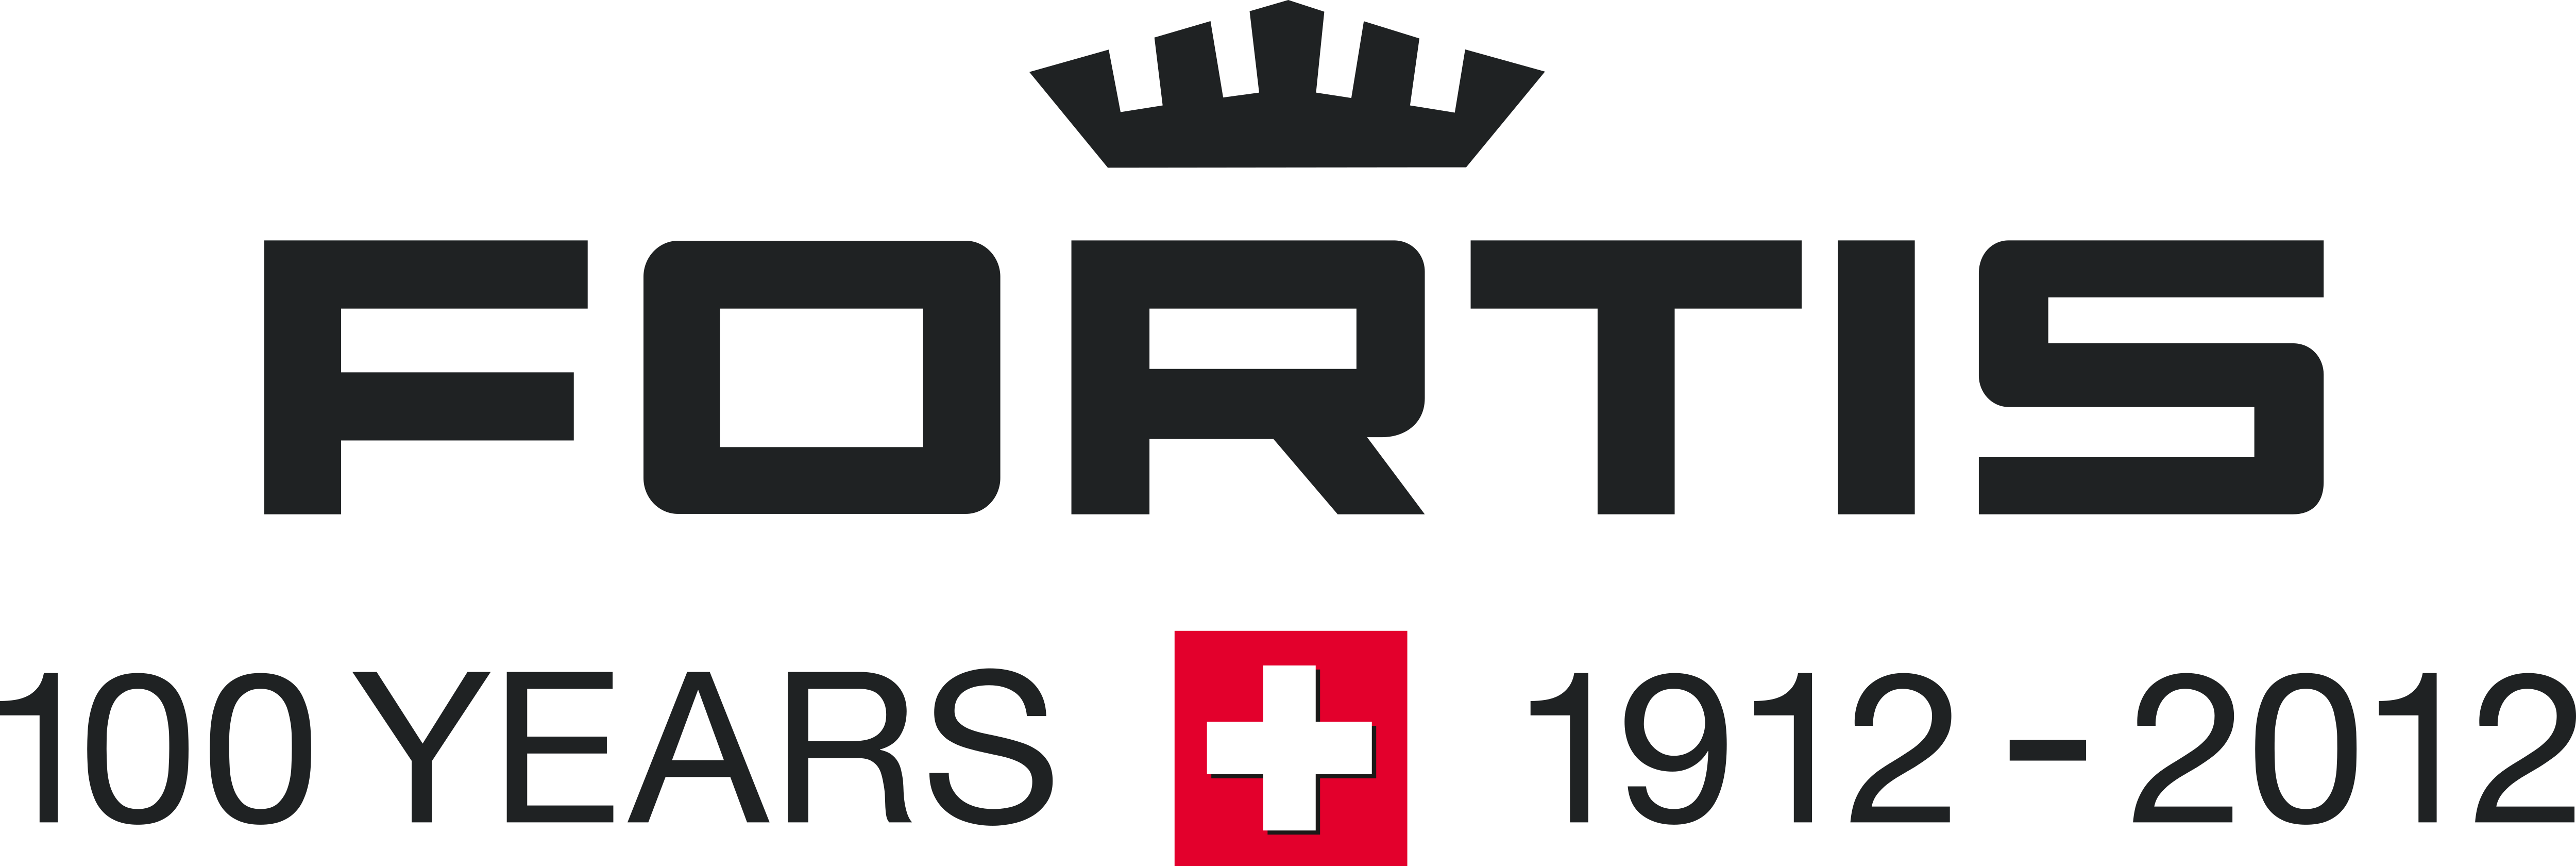 Fortis Logo Logok